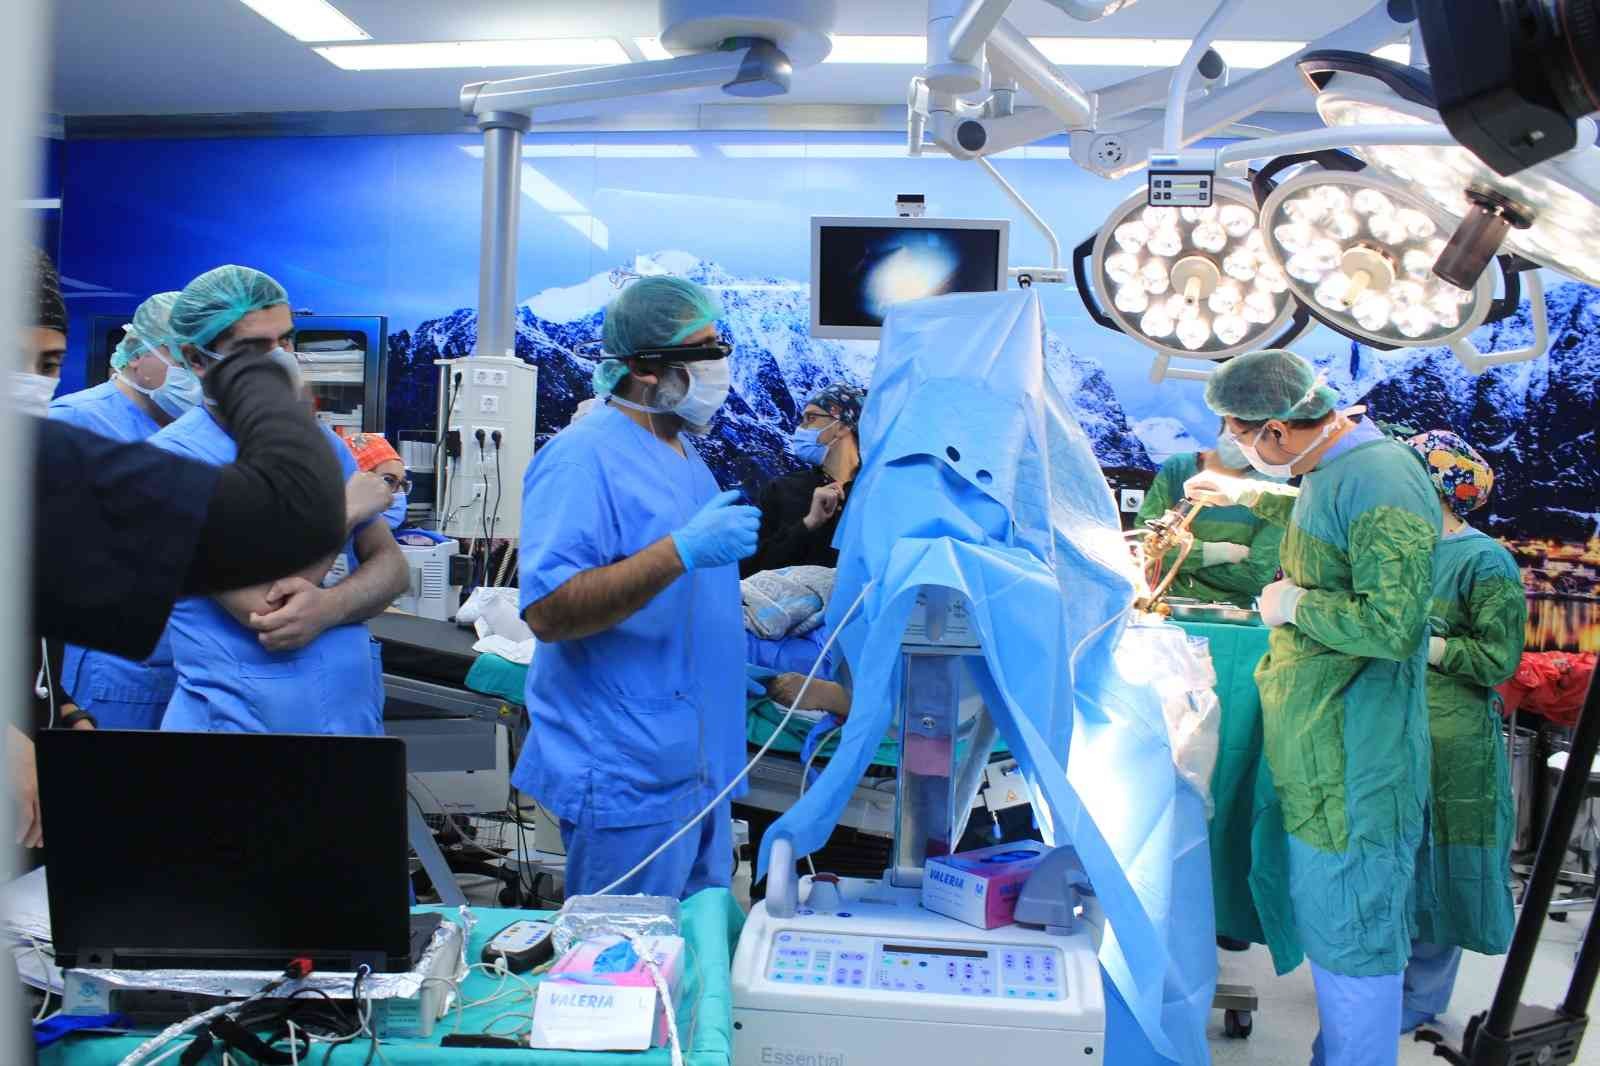 Canlı cerrahi ile beyin pili ameliyatı eğitimi verildi #istanbul